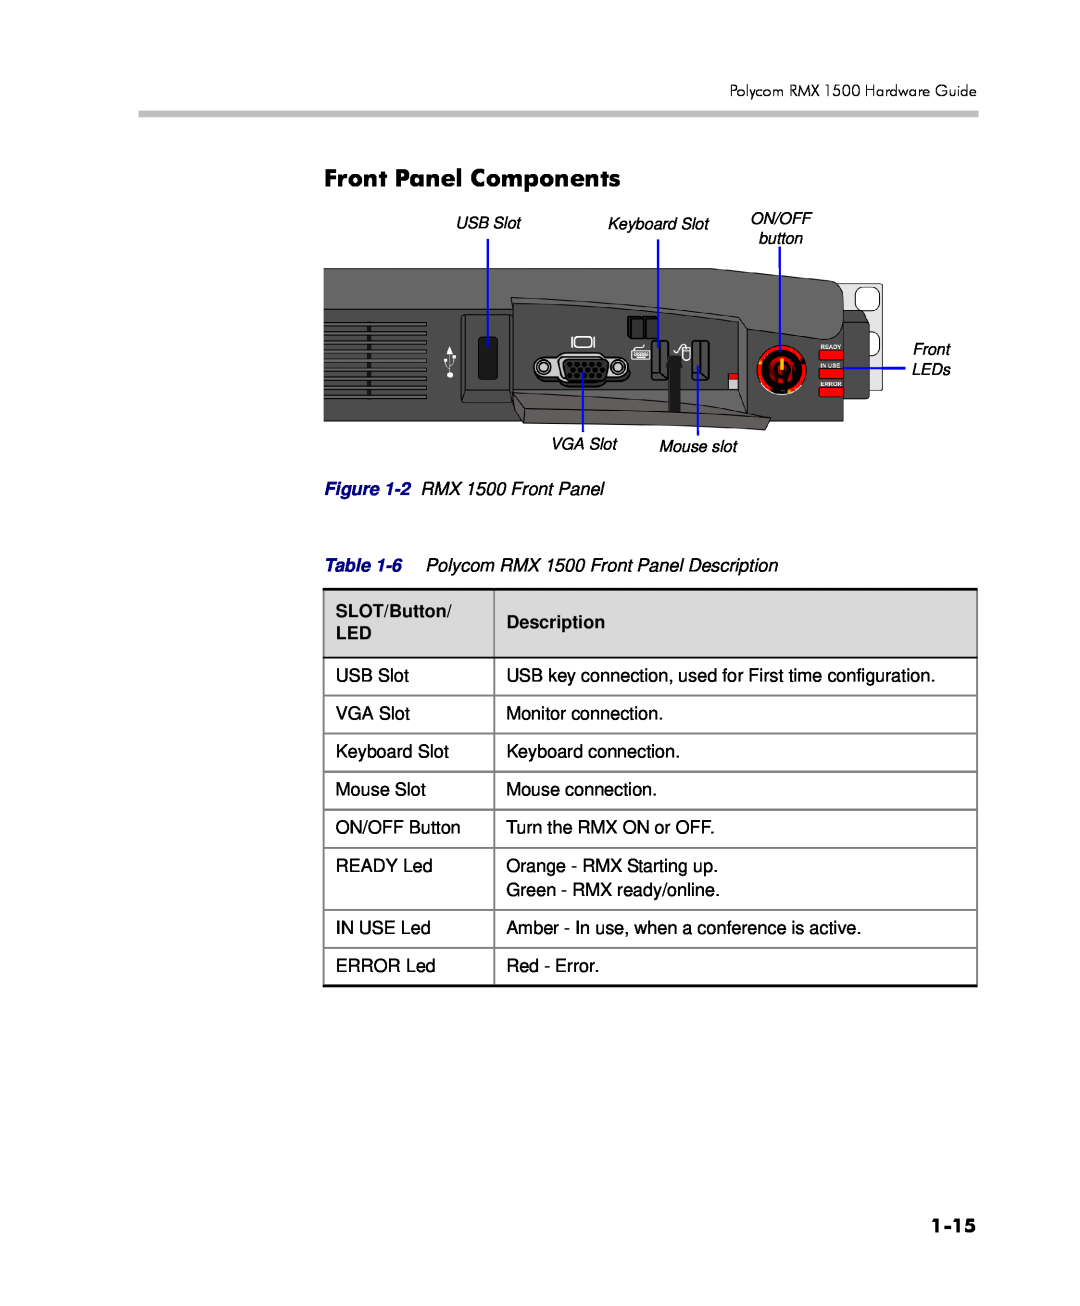 Polycom DOC2557C manual Front Panel Components, 1-15, SLOT/Button, Description 